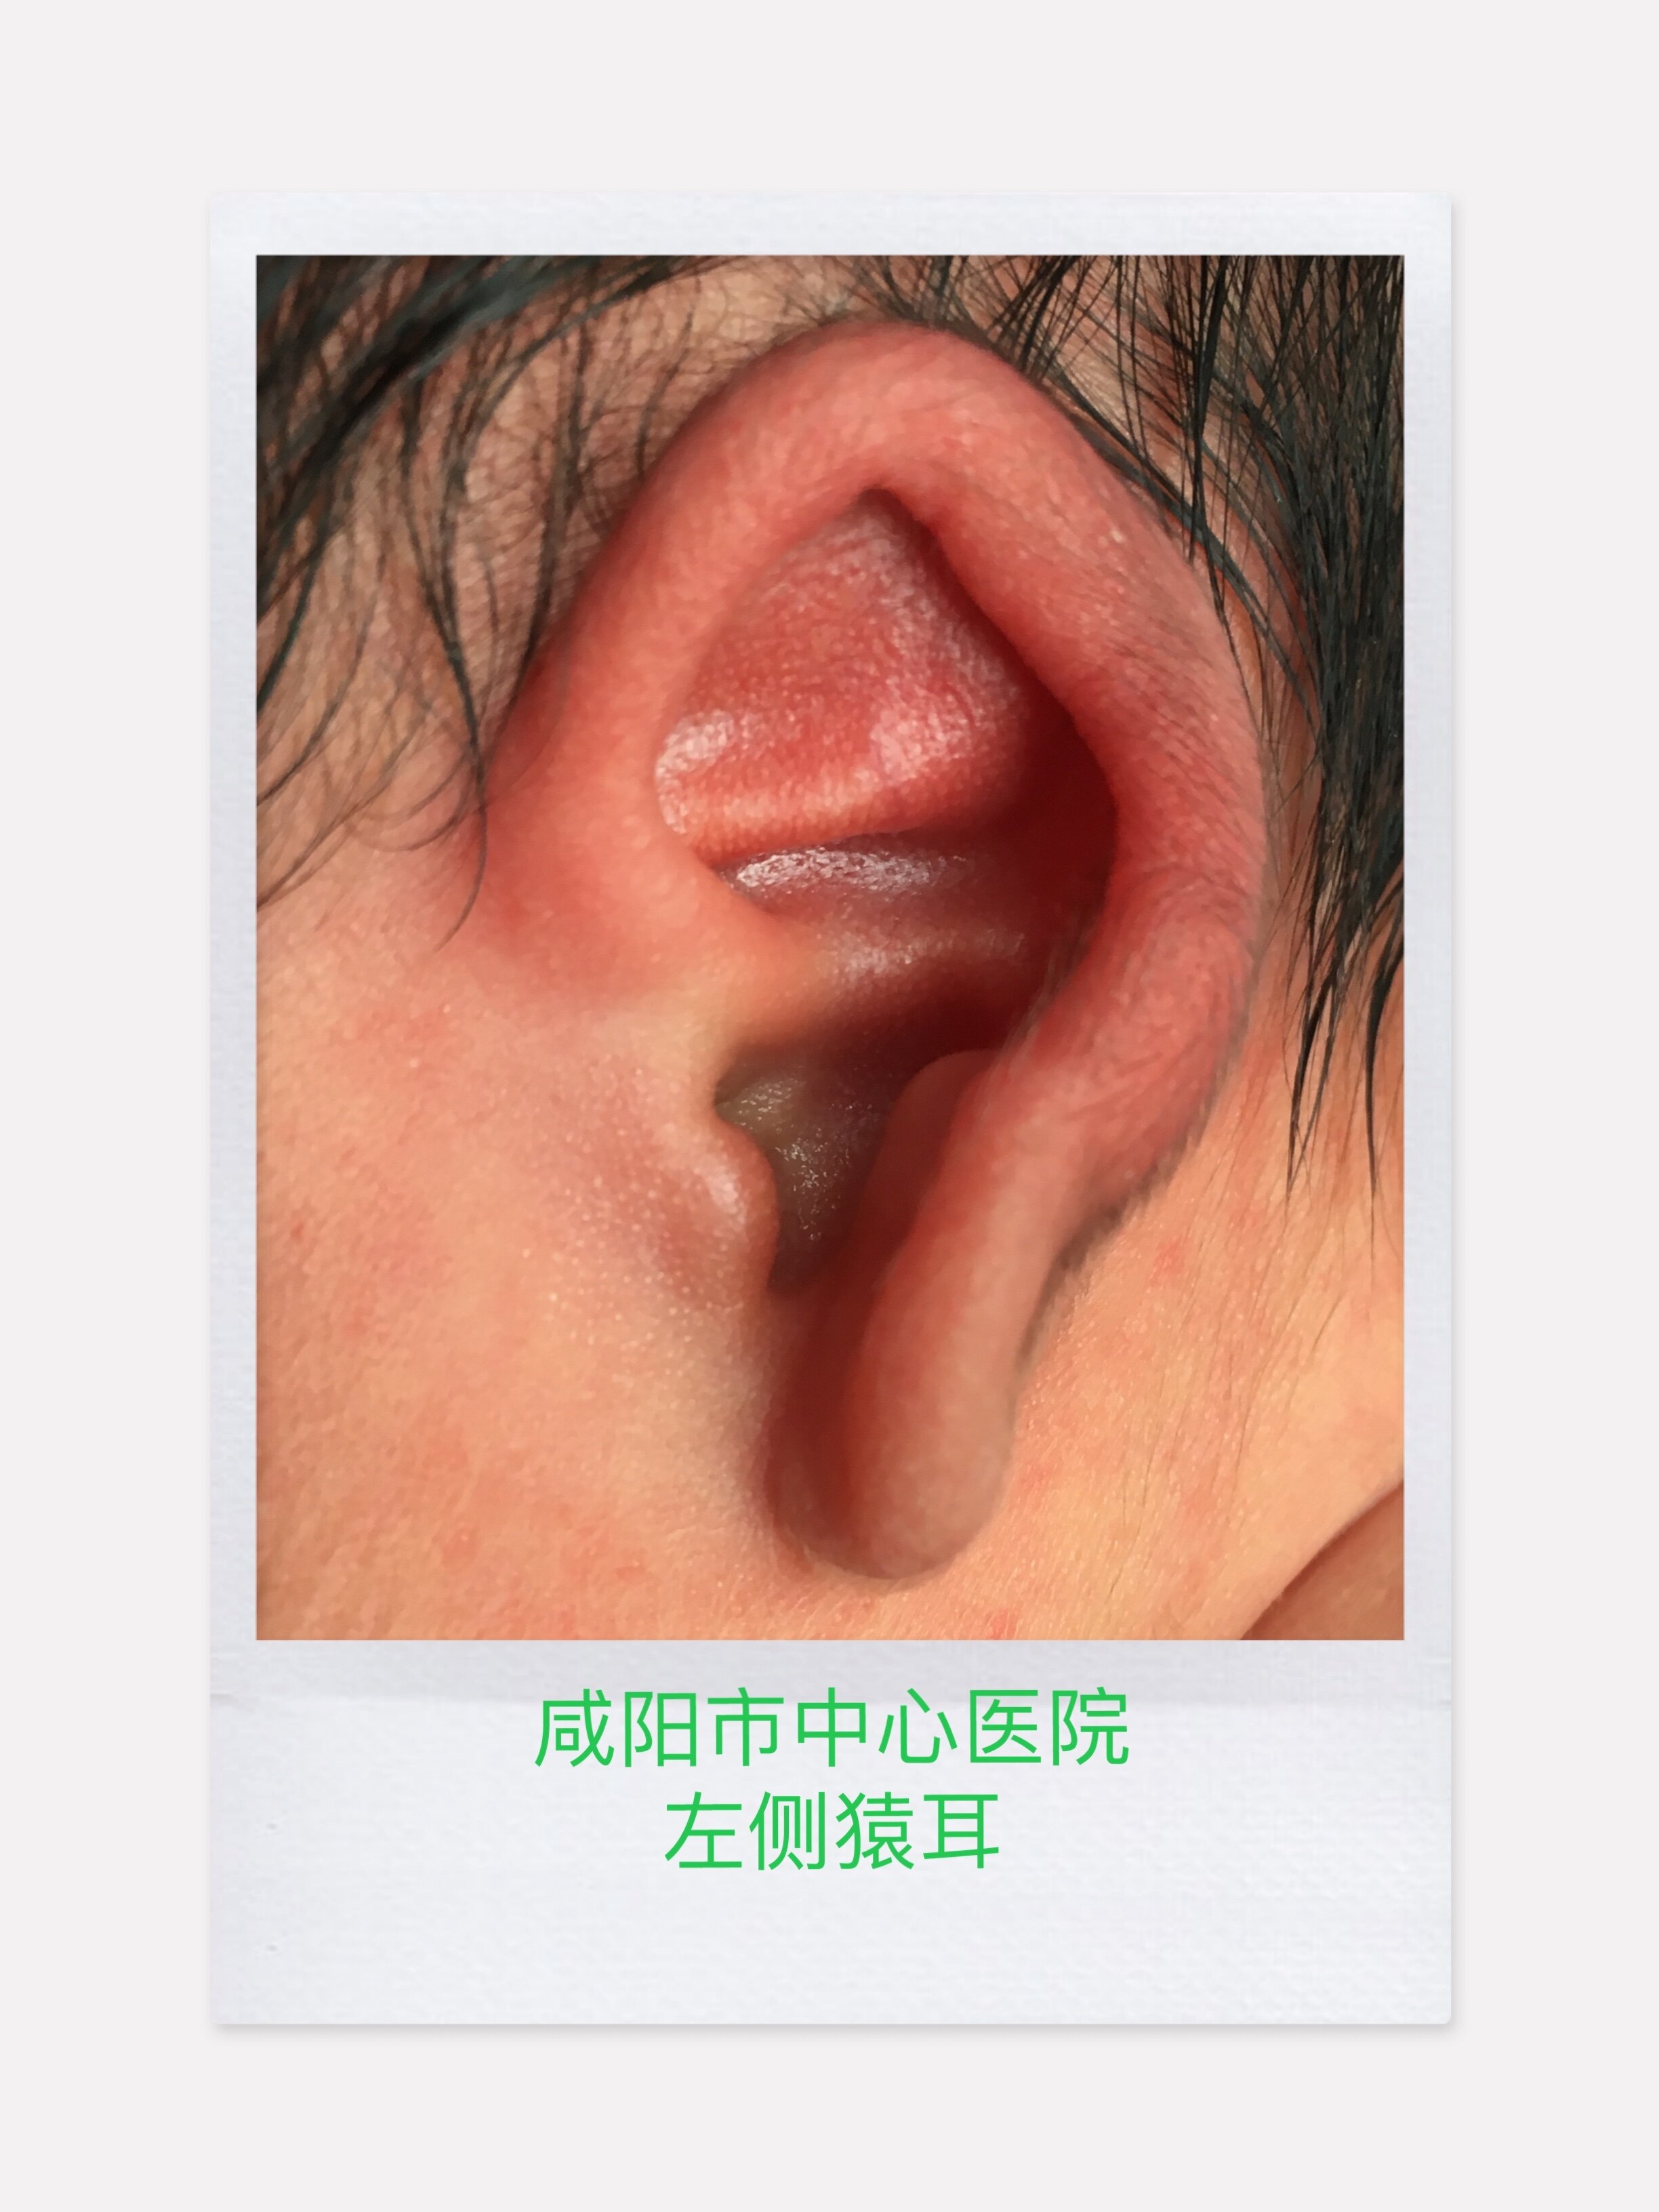 隐耳耳廓软骨上端隐入颞部头皮下,上方的颅耳沟变浅或消失,无明显的耳